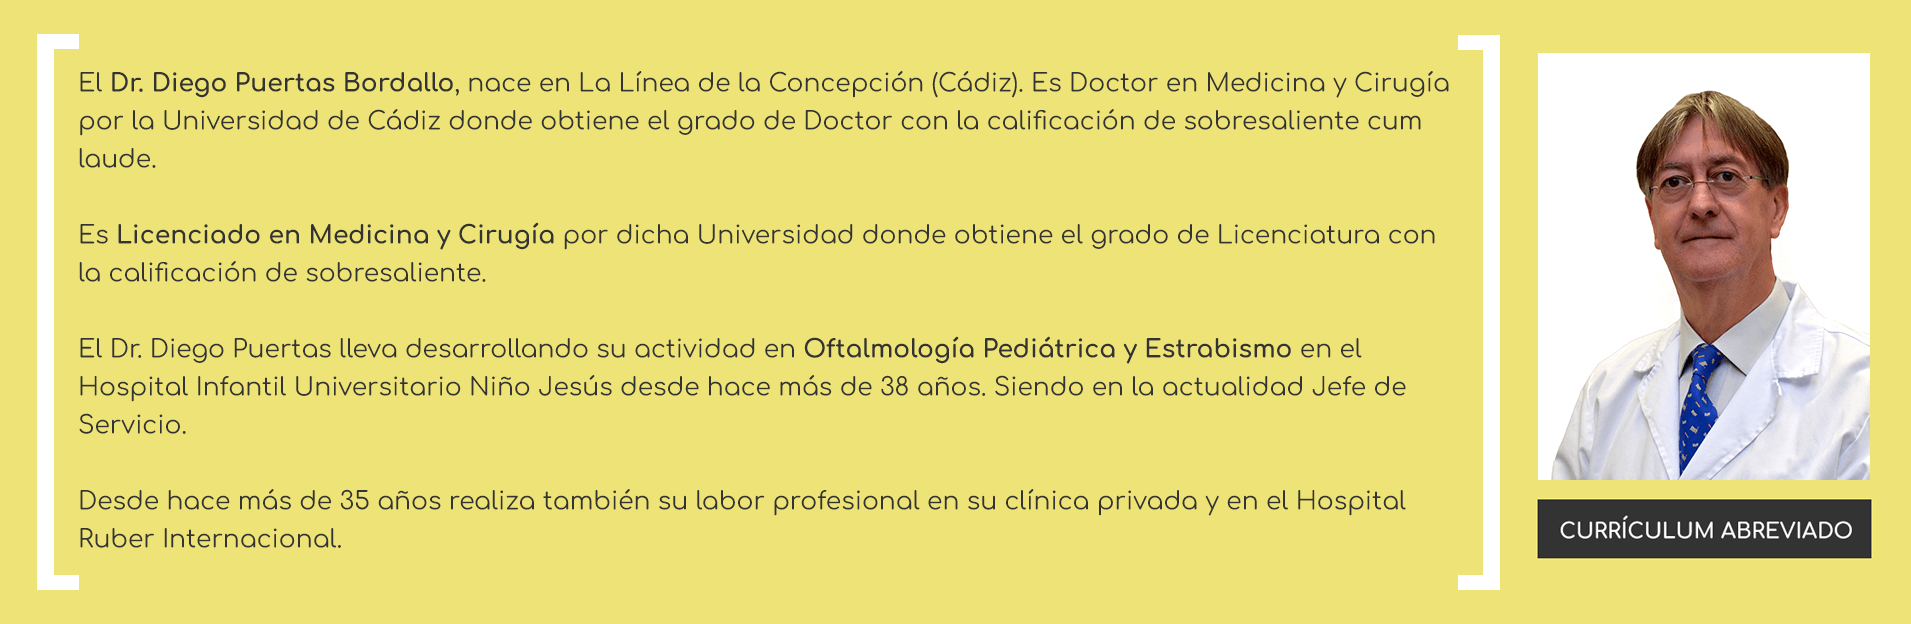 El Dr. Diego Puertas Bordallo, nace en La Línea de la Concepción (Cádiz). Es Licenciado en Medicina y Cirugía por la Universidad de Cádiz donde obtiene el grado de Licenciatura con la calificación de sobresaliente. Es especialista en Oftalmología (1984) y logra el Título de Doctor en su tesis doctoral titulada 'Aspetos Epidemiológicos de las Conjuntivitis', la calificación de sobresaliente cum laude. El Dr. Diego Puertas lleva desarrollando su actividad en Oftalmología Pediátrica y Estrabismo en el Hospital Infantil Universitario Niño Jesús desde hace más de 34 años. Siendo en la actualidad Jefe de Servicio. Desde hace más de 30 años realiza también su trabajo en su clínica privada y en el Hospital Ruber Internacional.